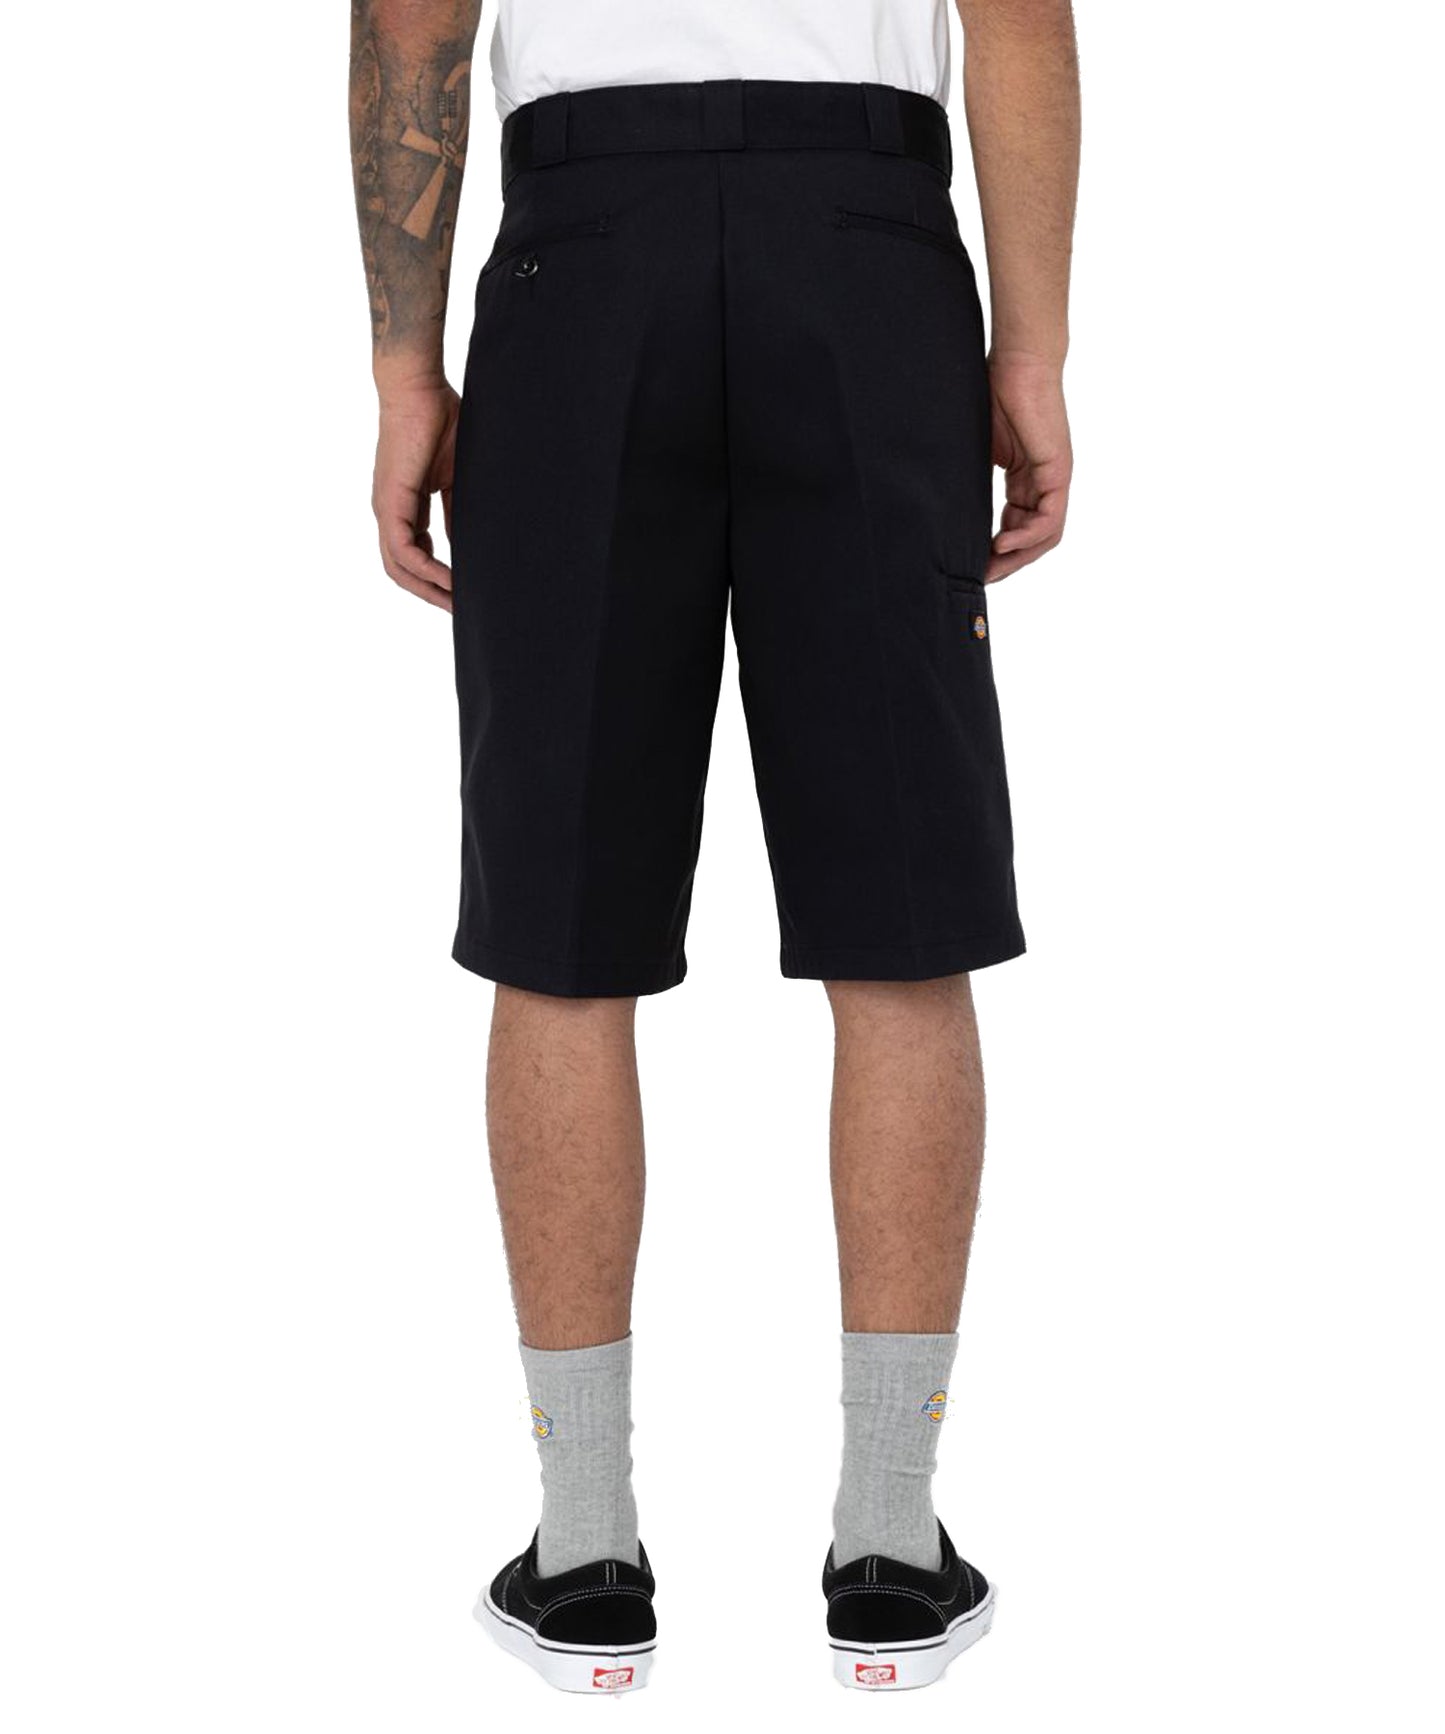 Pantalón corto dickies marca mítica por su ropa de trabajo ,color negro -bolsillos laterales-holgados de cintura normal y logo dickies en la pierna.